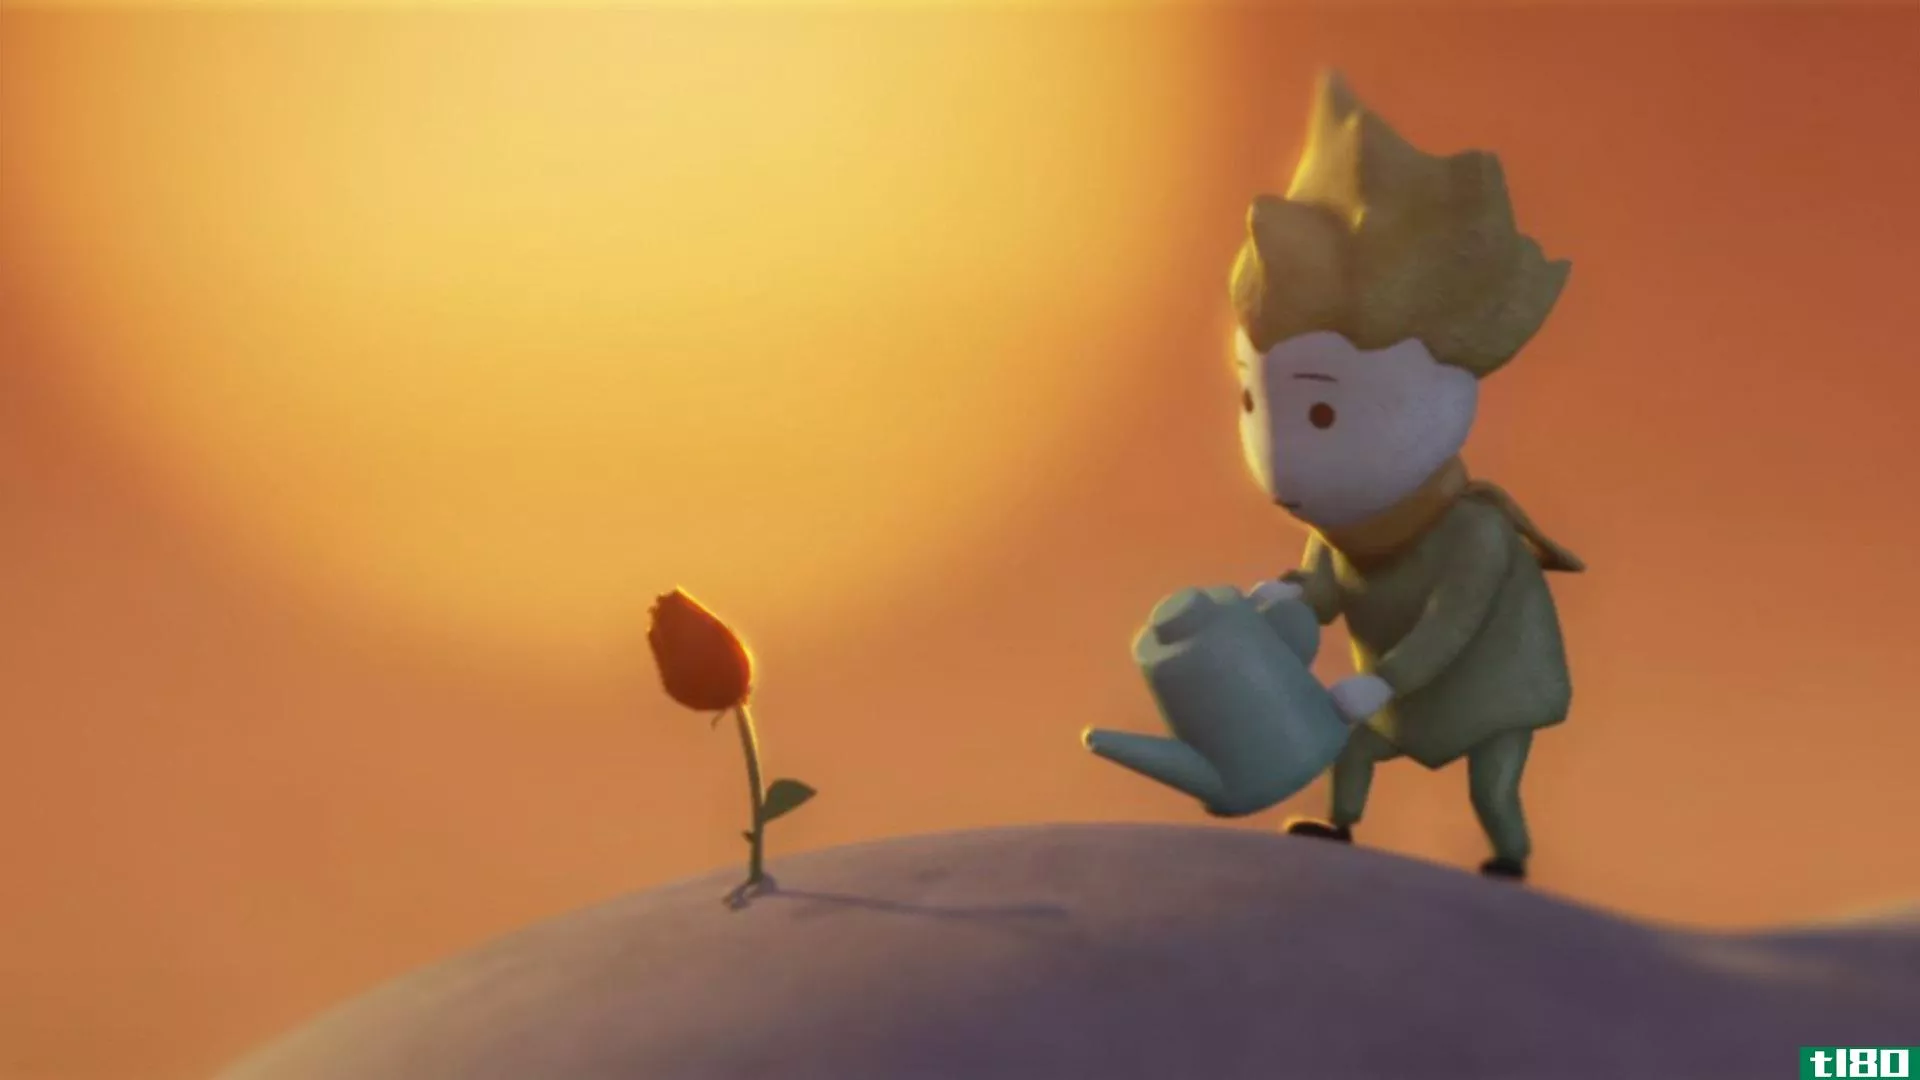 虚拟现实中的小王子就像一幅栩栩如生的立体画